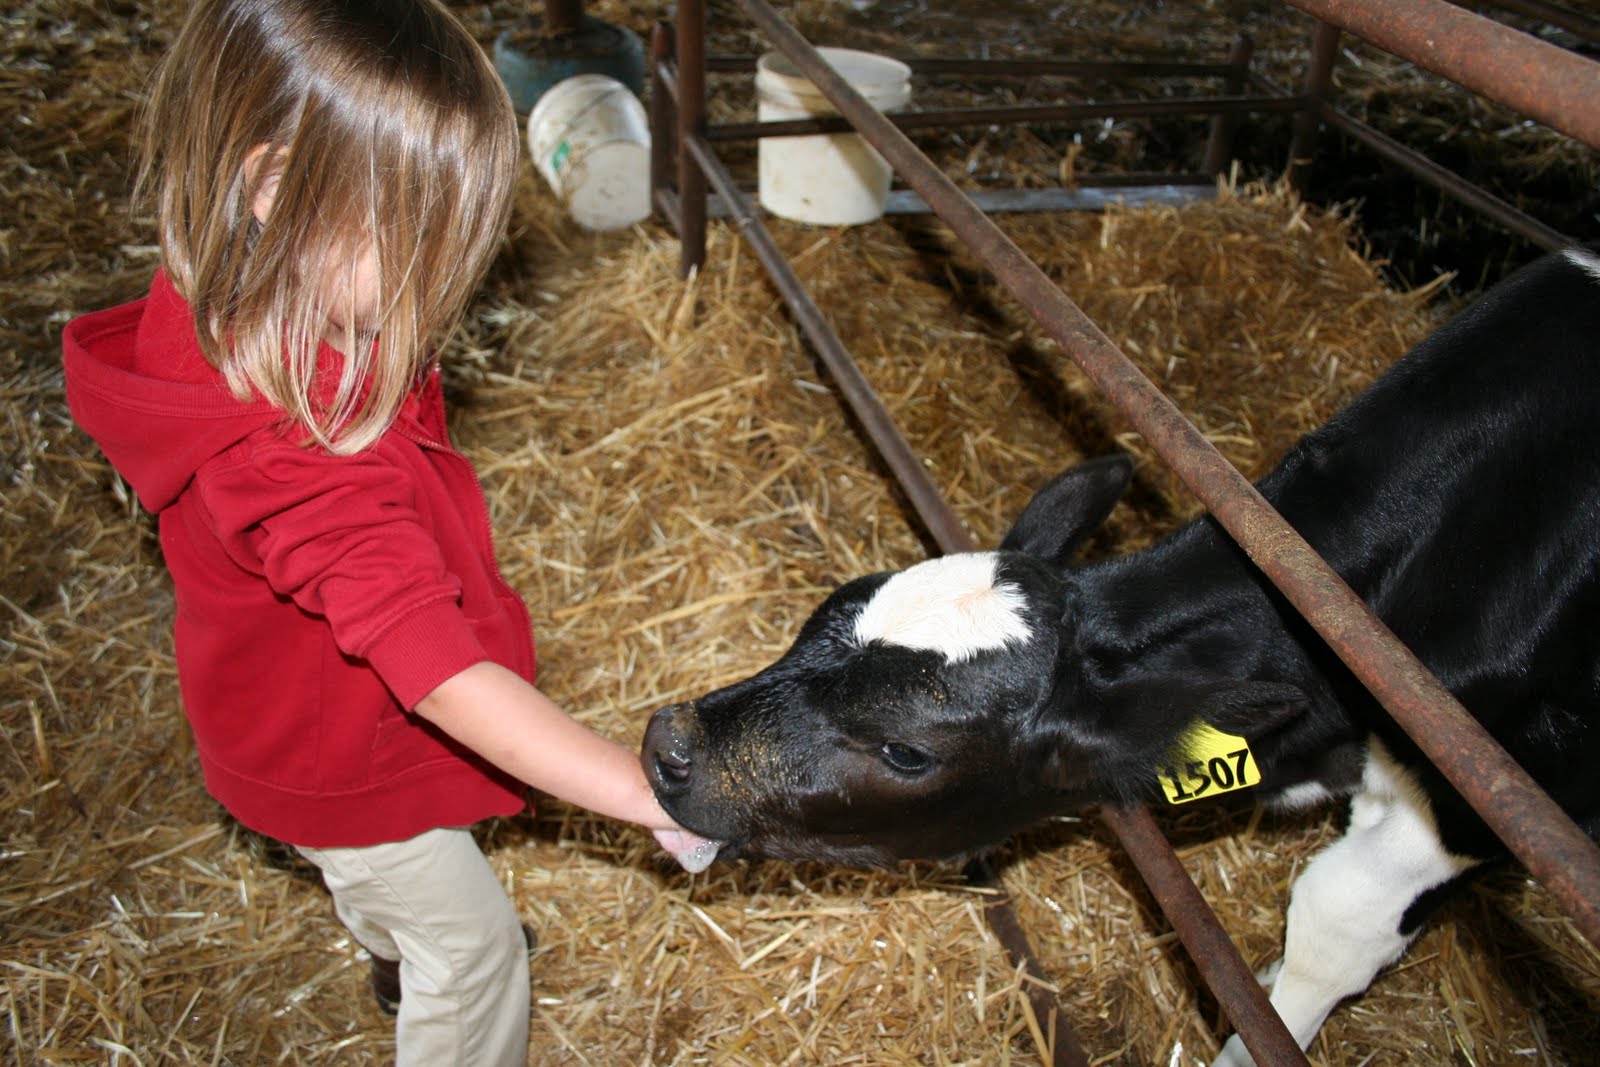 Paige LOVES the calves. 